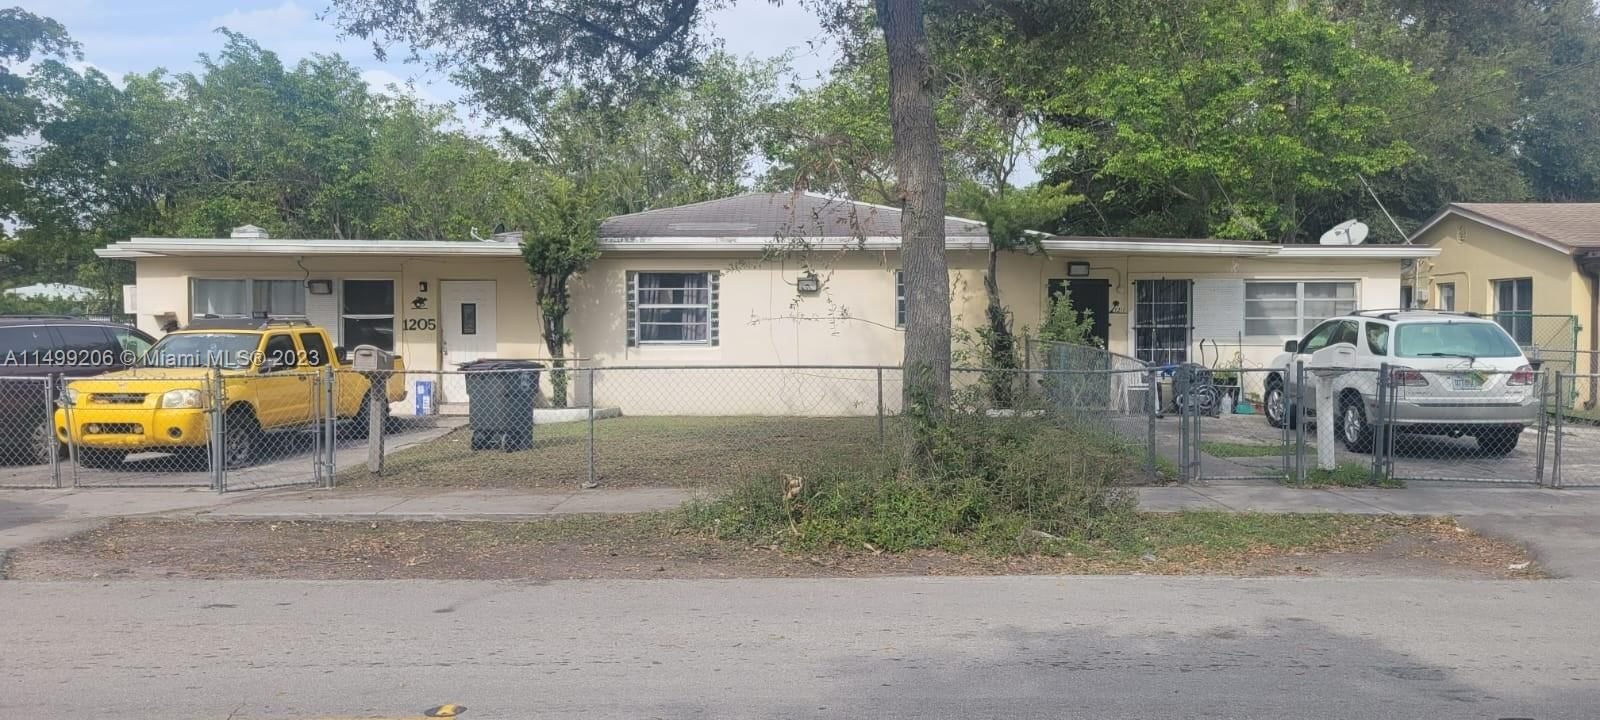 Real estate property located at 1205 127th St, Miami-Dade County, HAMPSHIRE HEATH, North Miami, FL